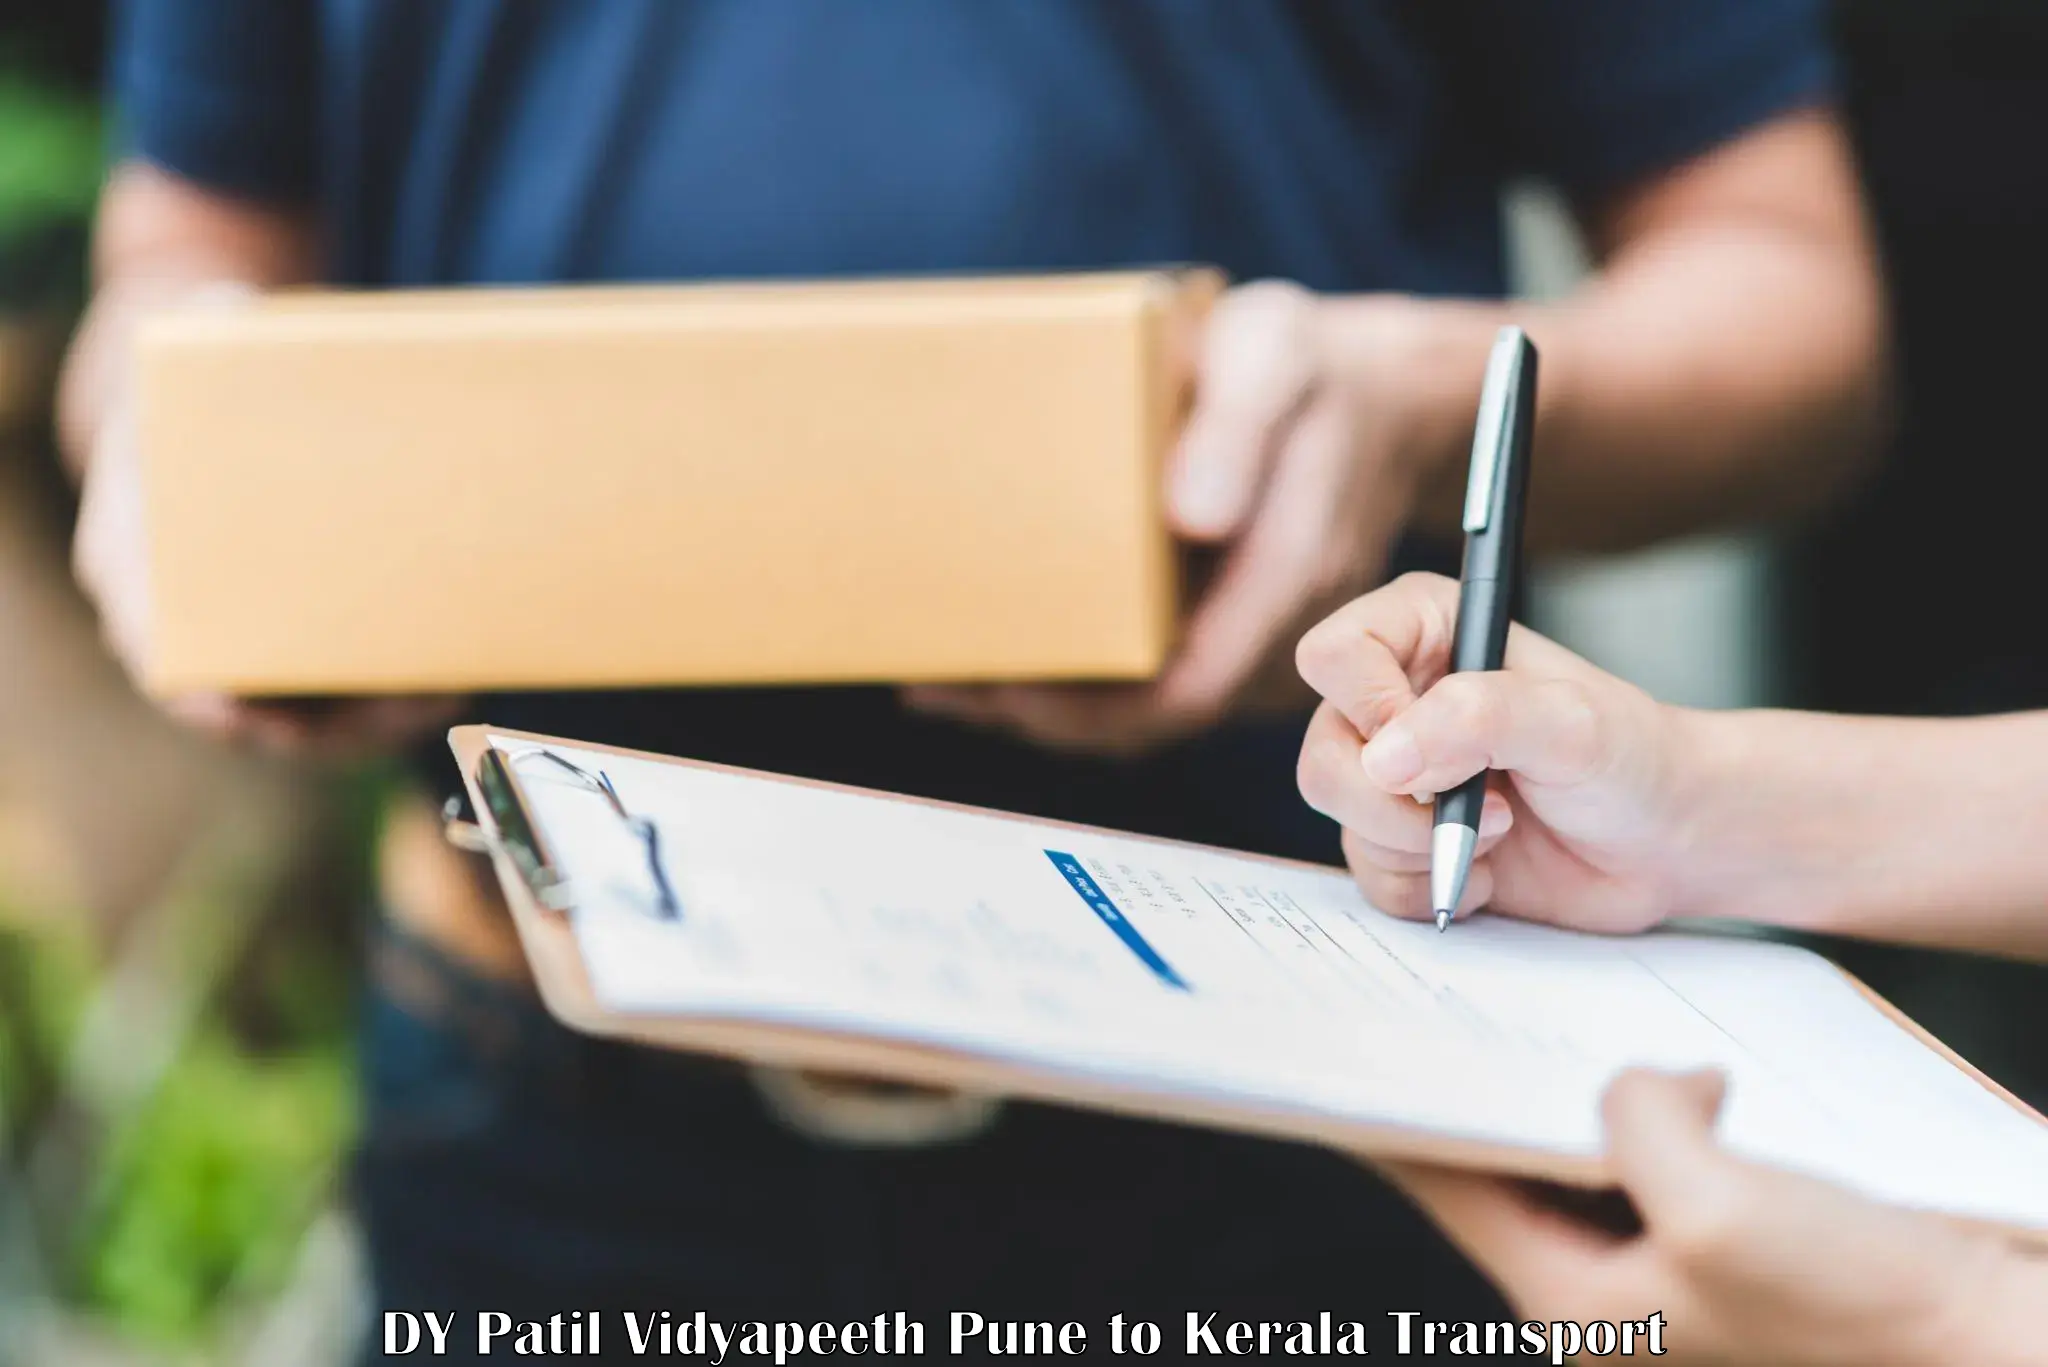 Two wheeler parcel service DY Patil Vidyapeeth Pune to Kuchi